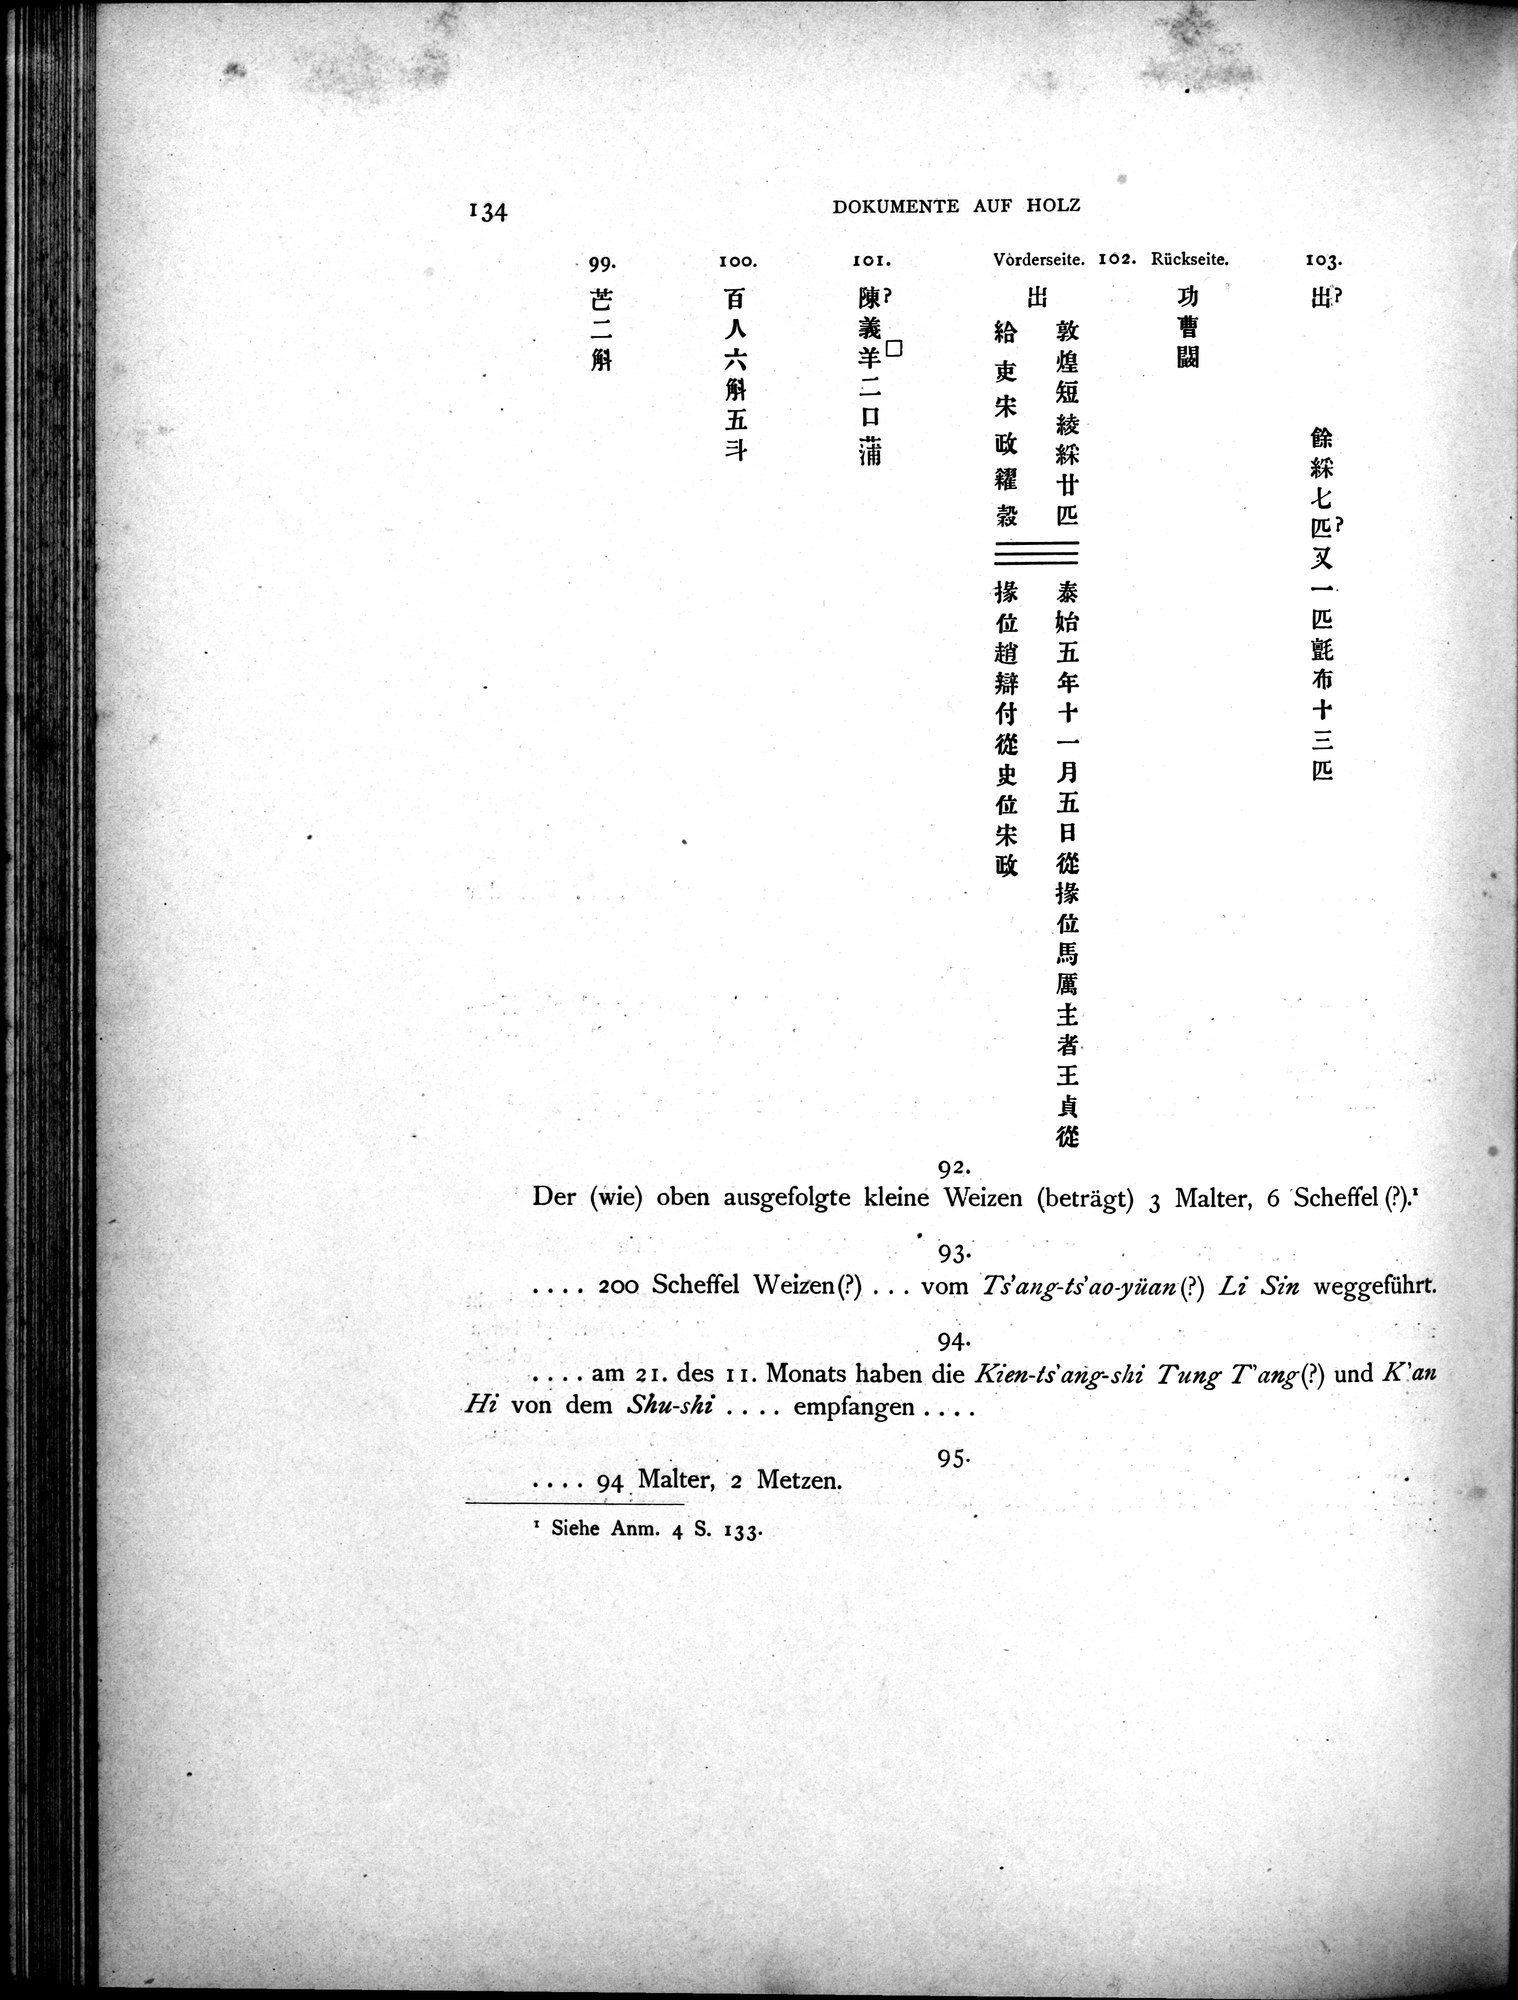 Die Chinesischen Handschriften- und sonstigen Kleinfunde Sven Hedins in Lou-lan : vol.1 / Page 158 (Grayscale High Resolution Image)